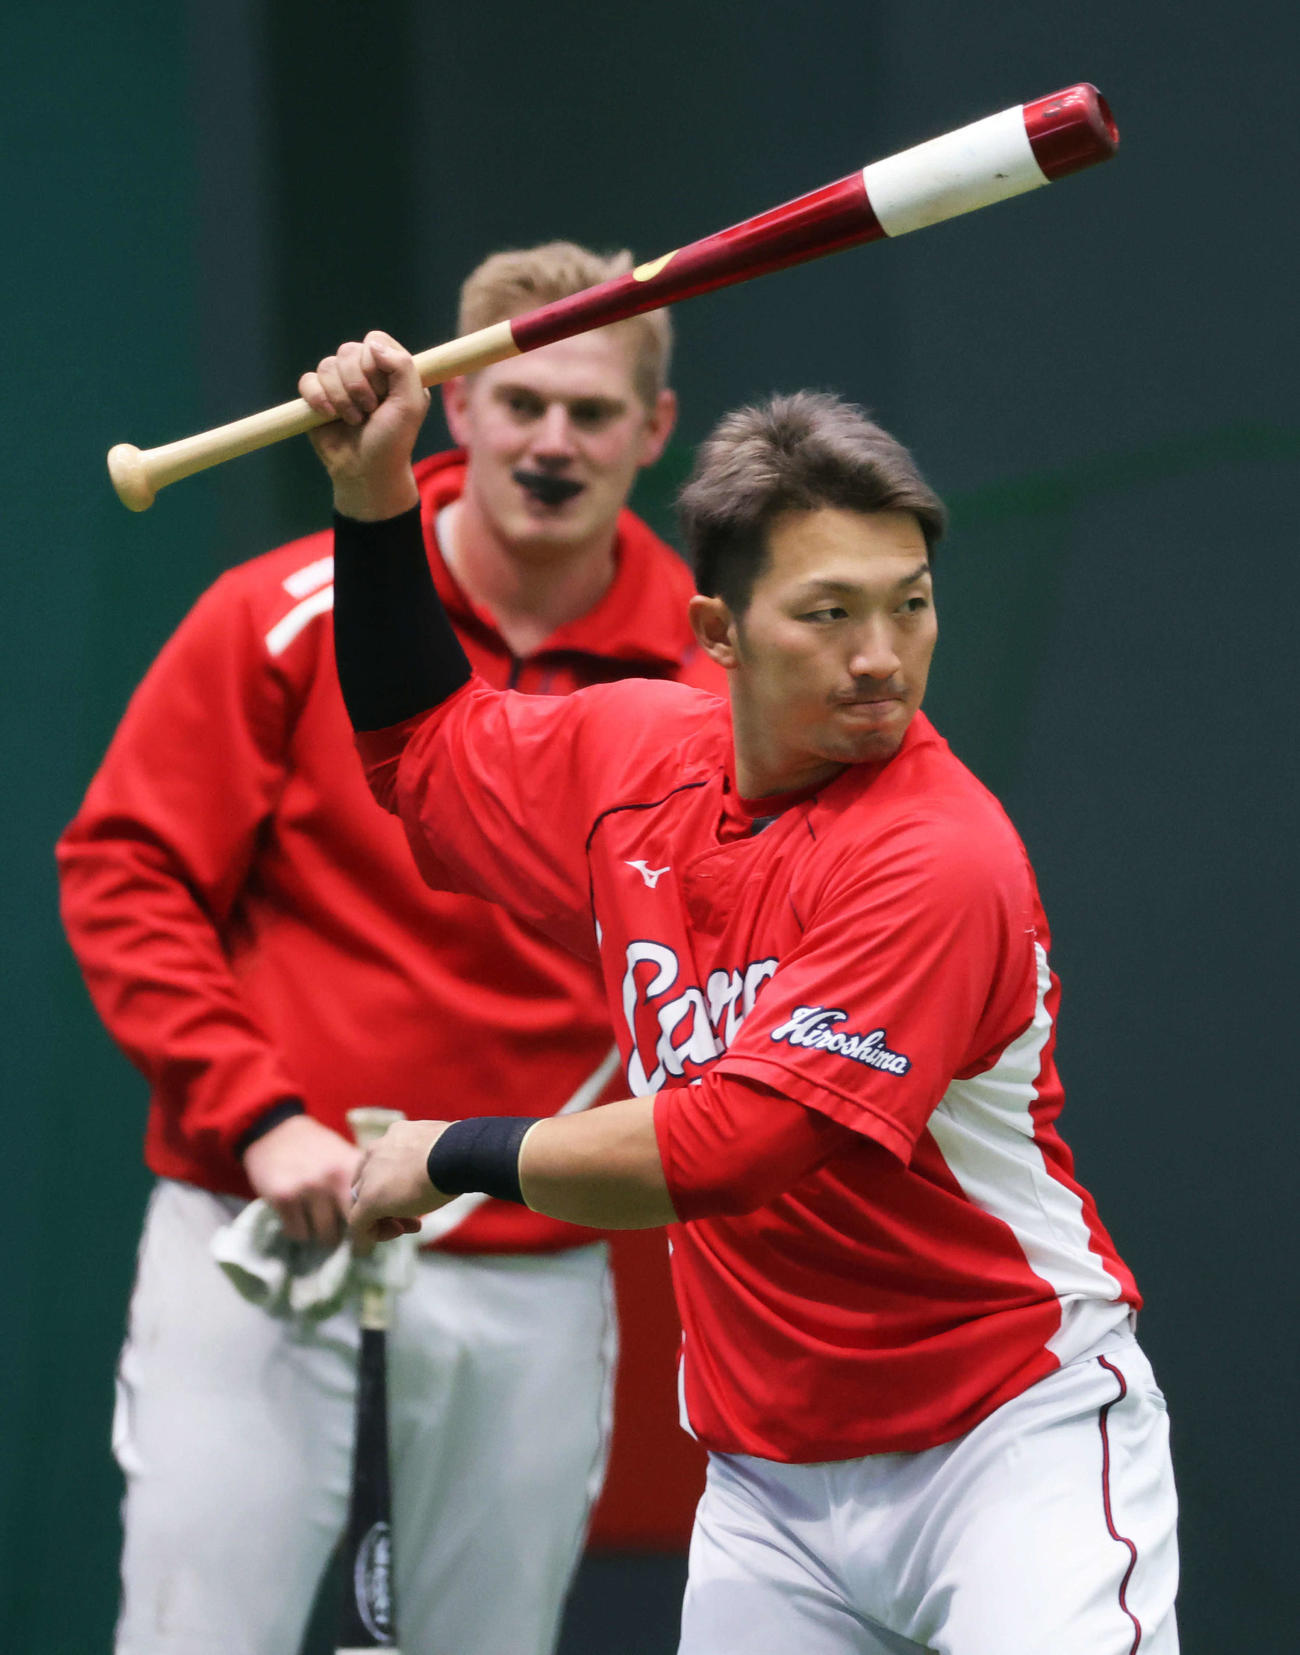 ティー打撃練習をする鈴木誠。左はクロン